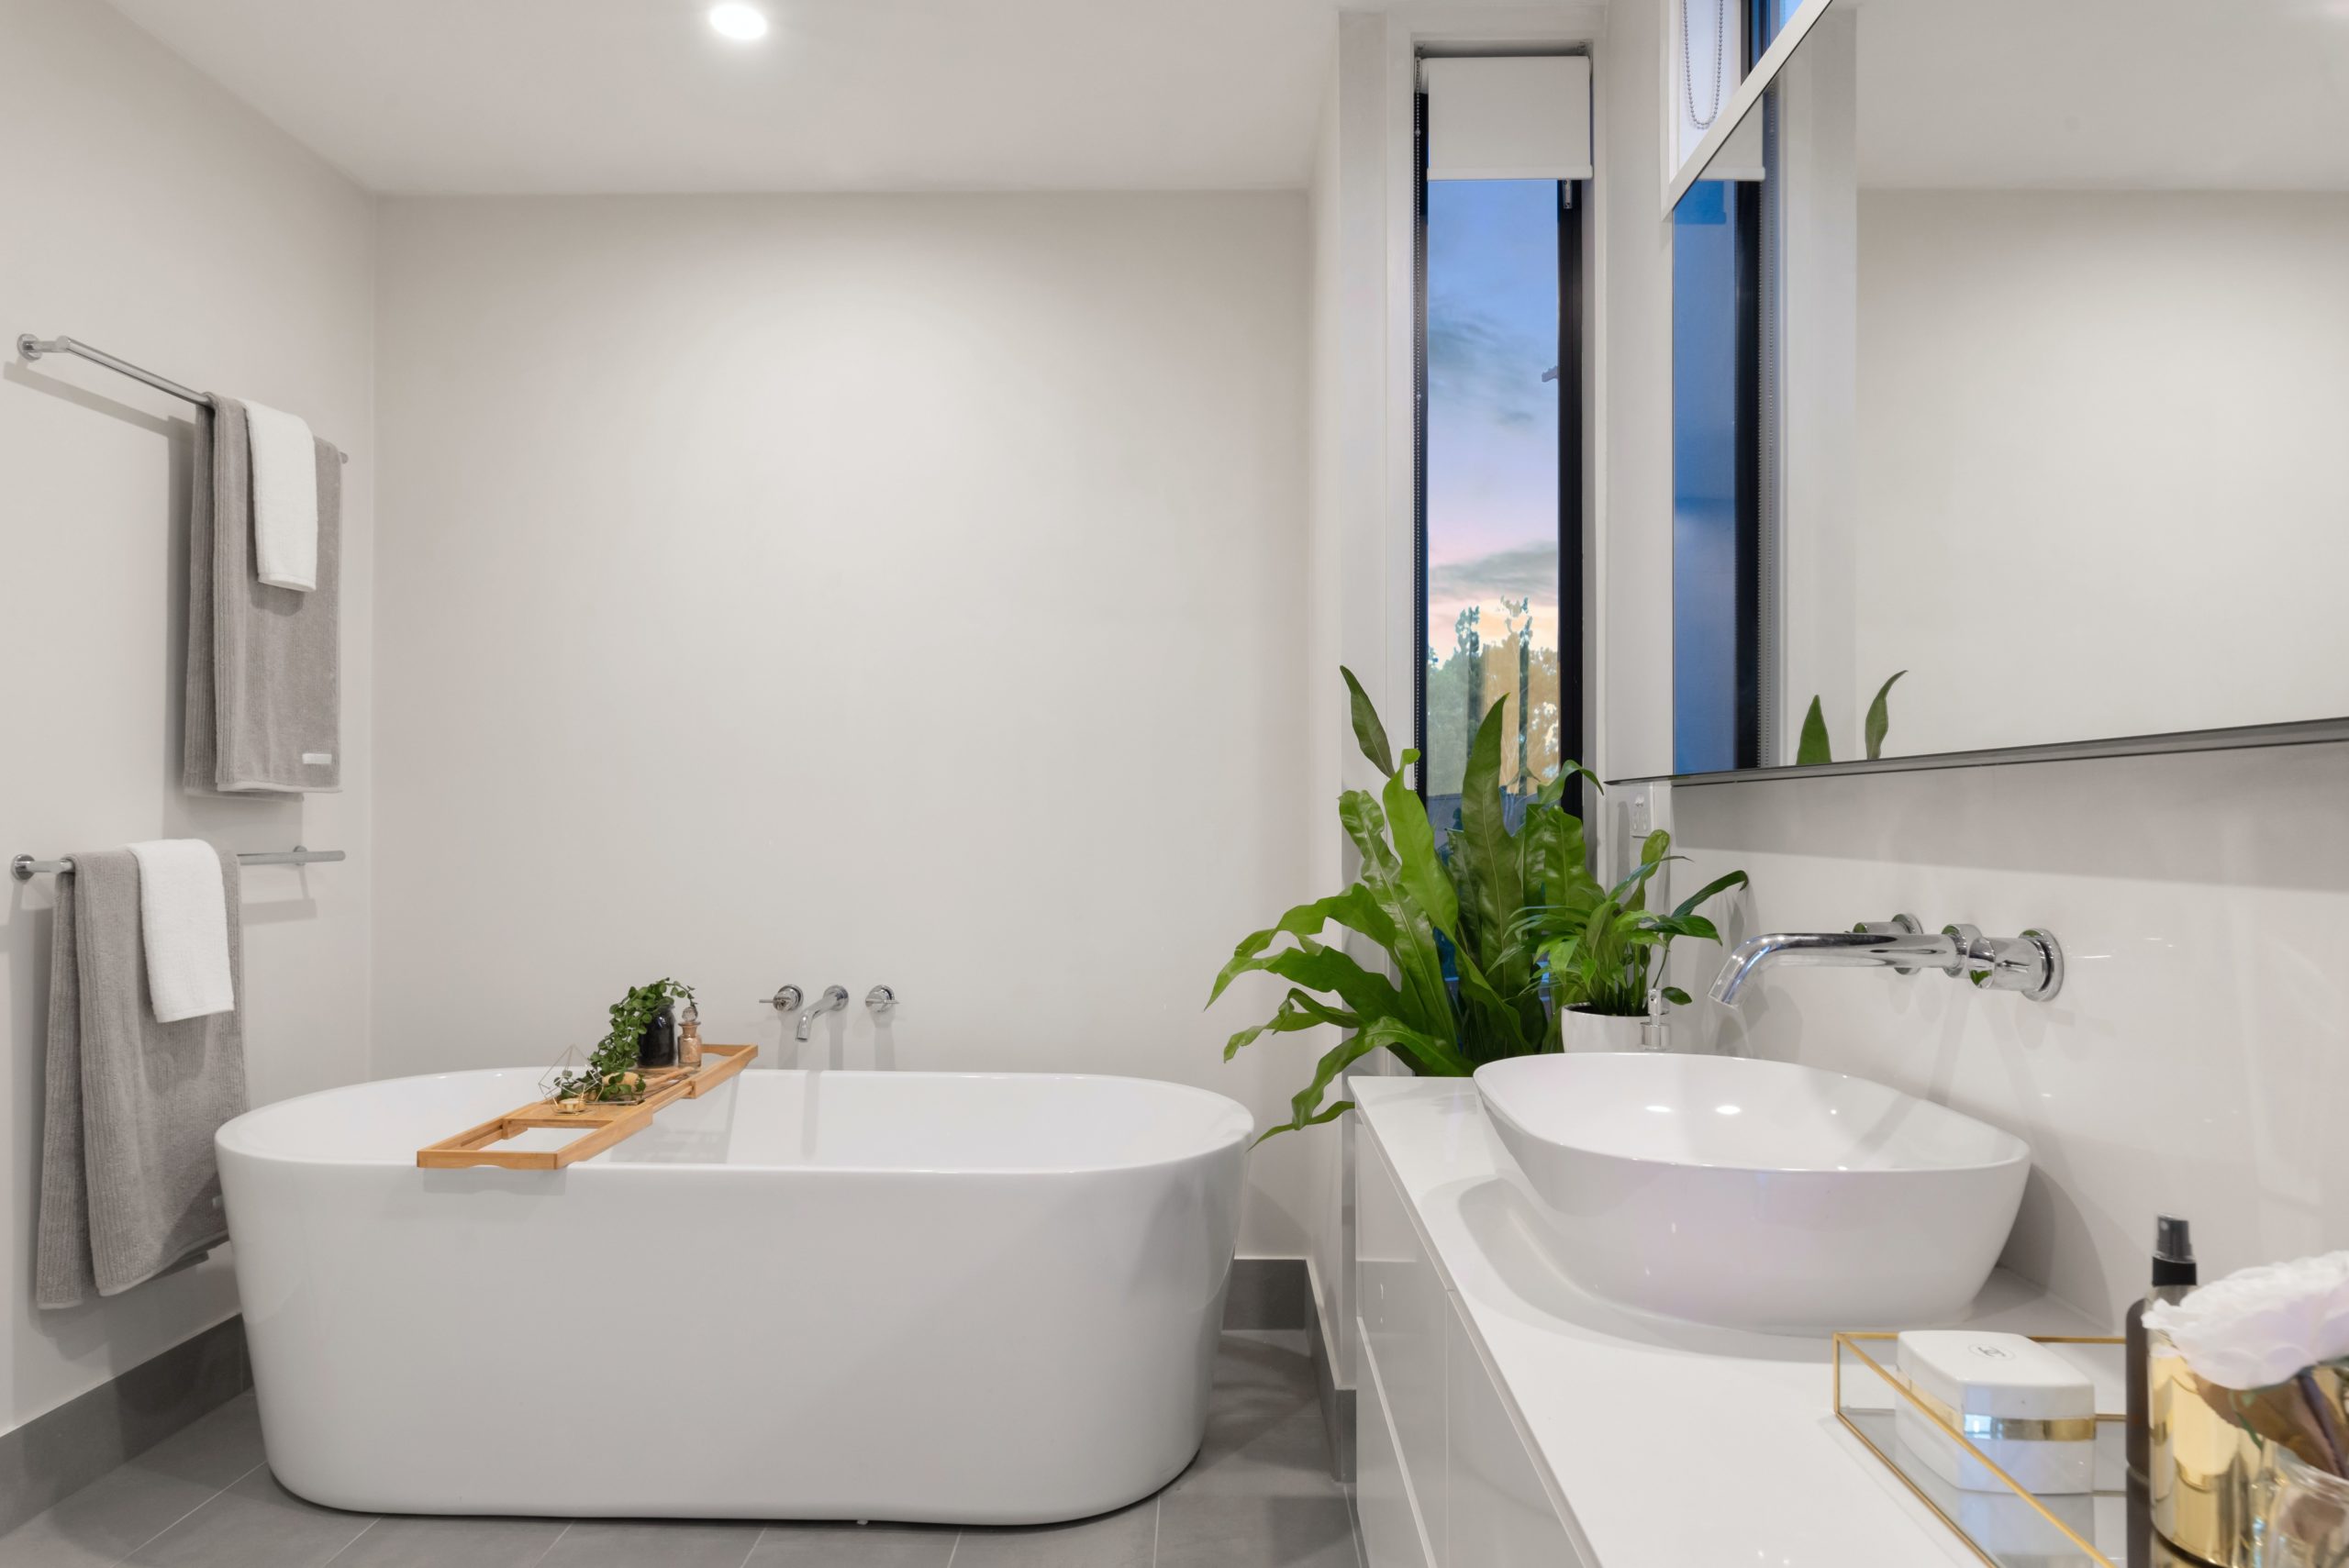 A white bathroom with a ceramic bathtub, sink, and grey towels